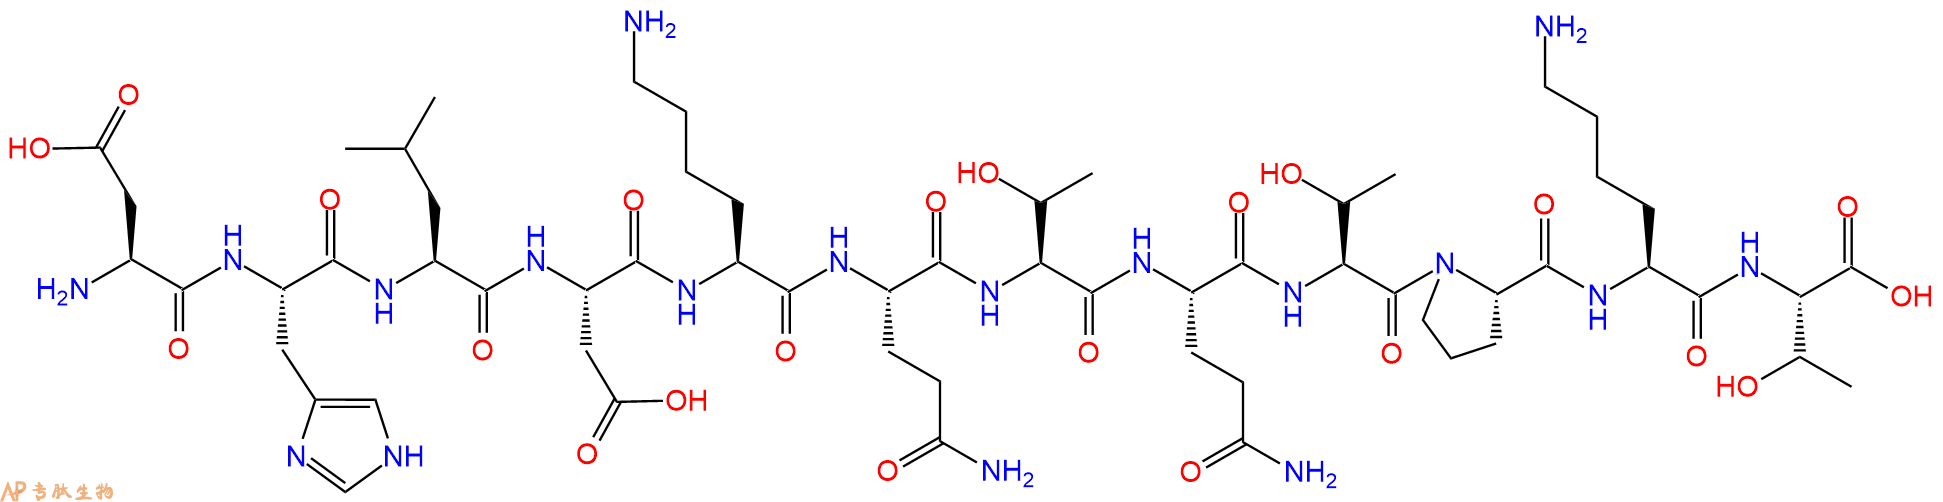 专肽生物产品H2N-Asp-His-Leu-Asp-Lys-Gln-Thr-Gln-Thr-Pro-Lys-Th